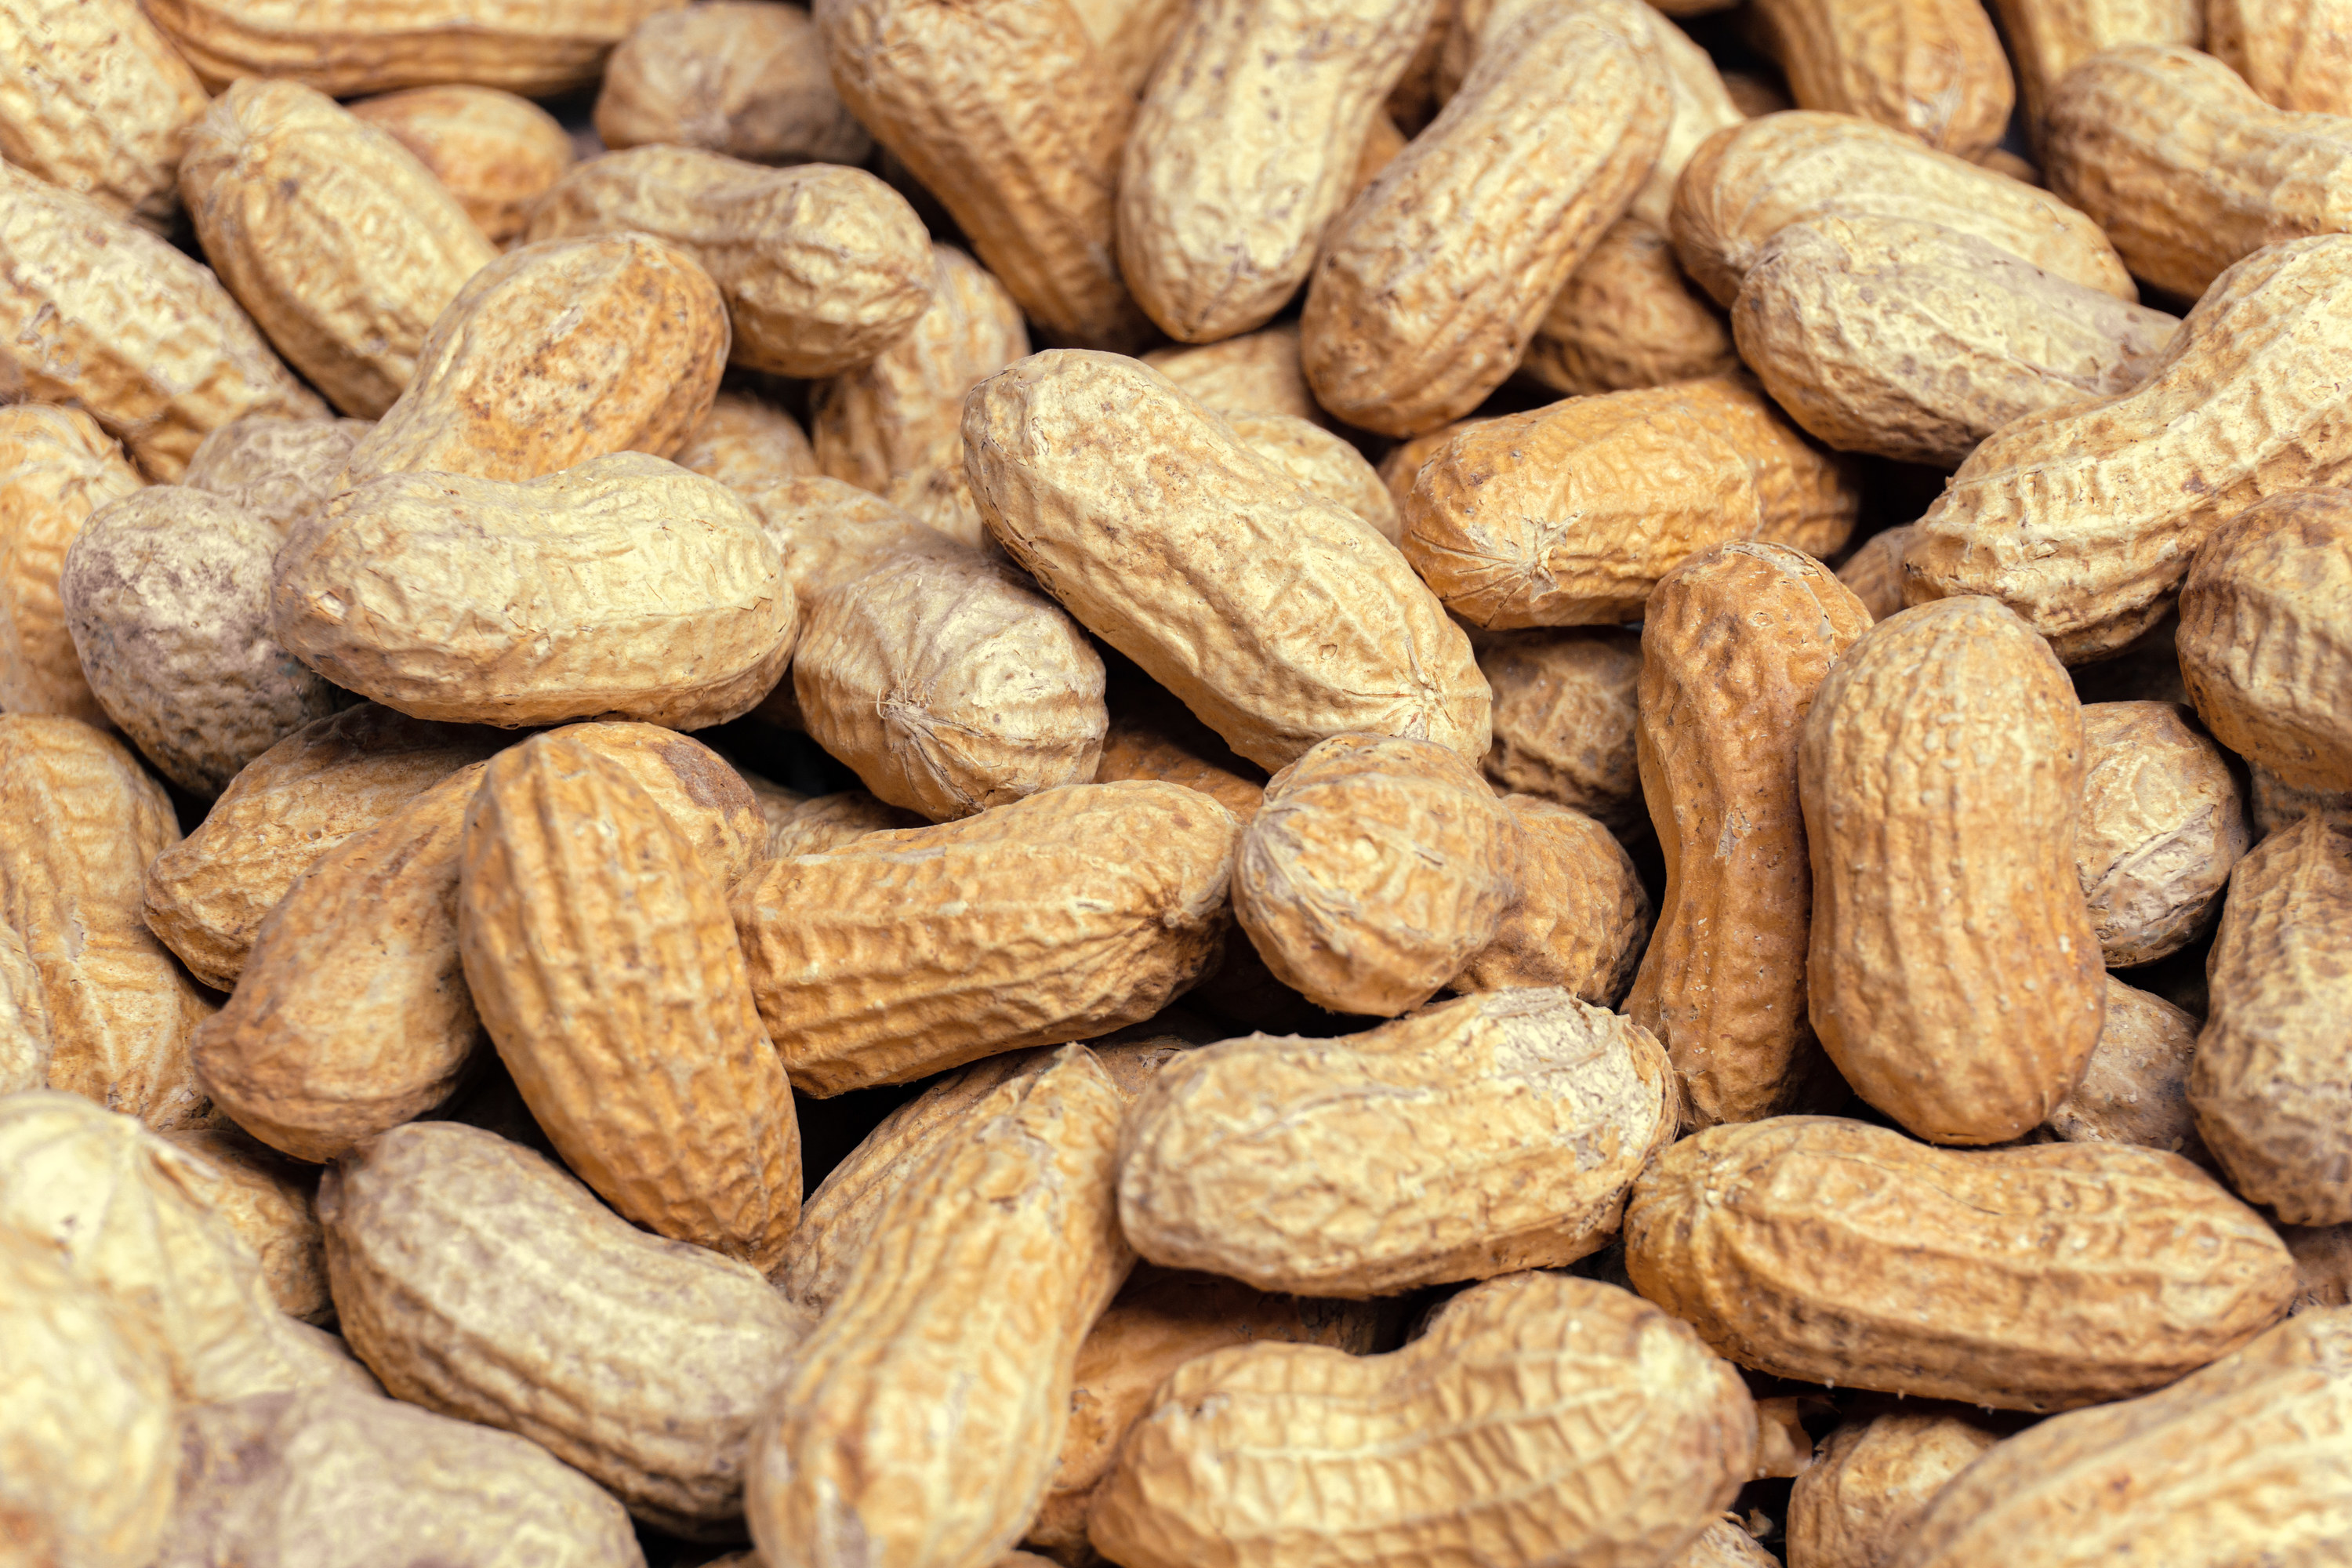 A close-up of peanuts